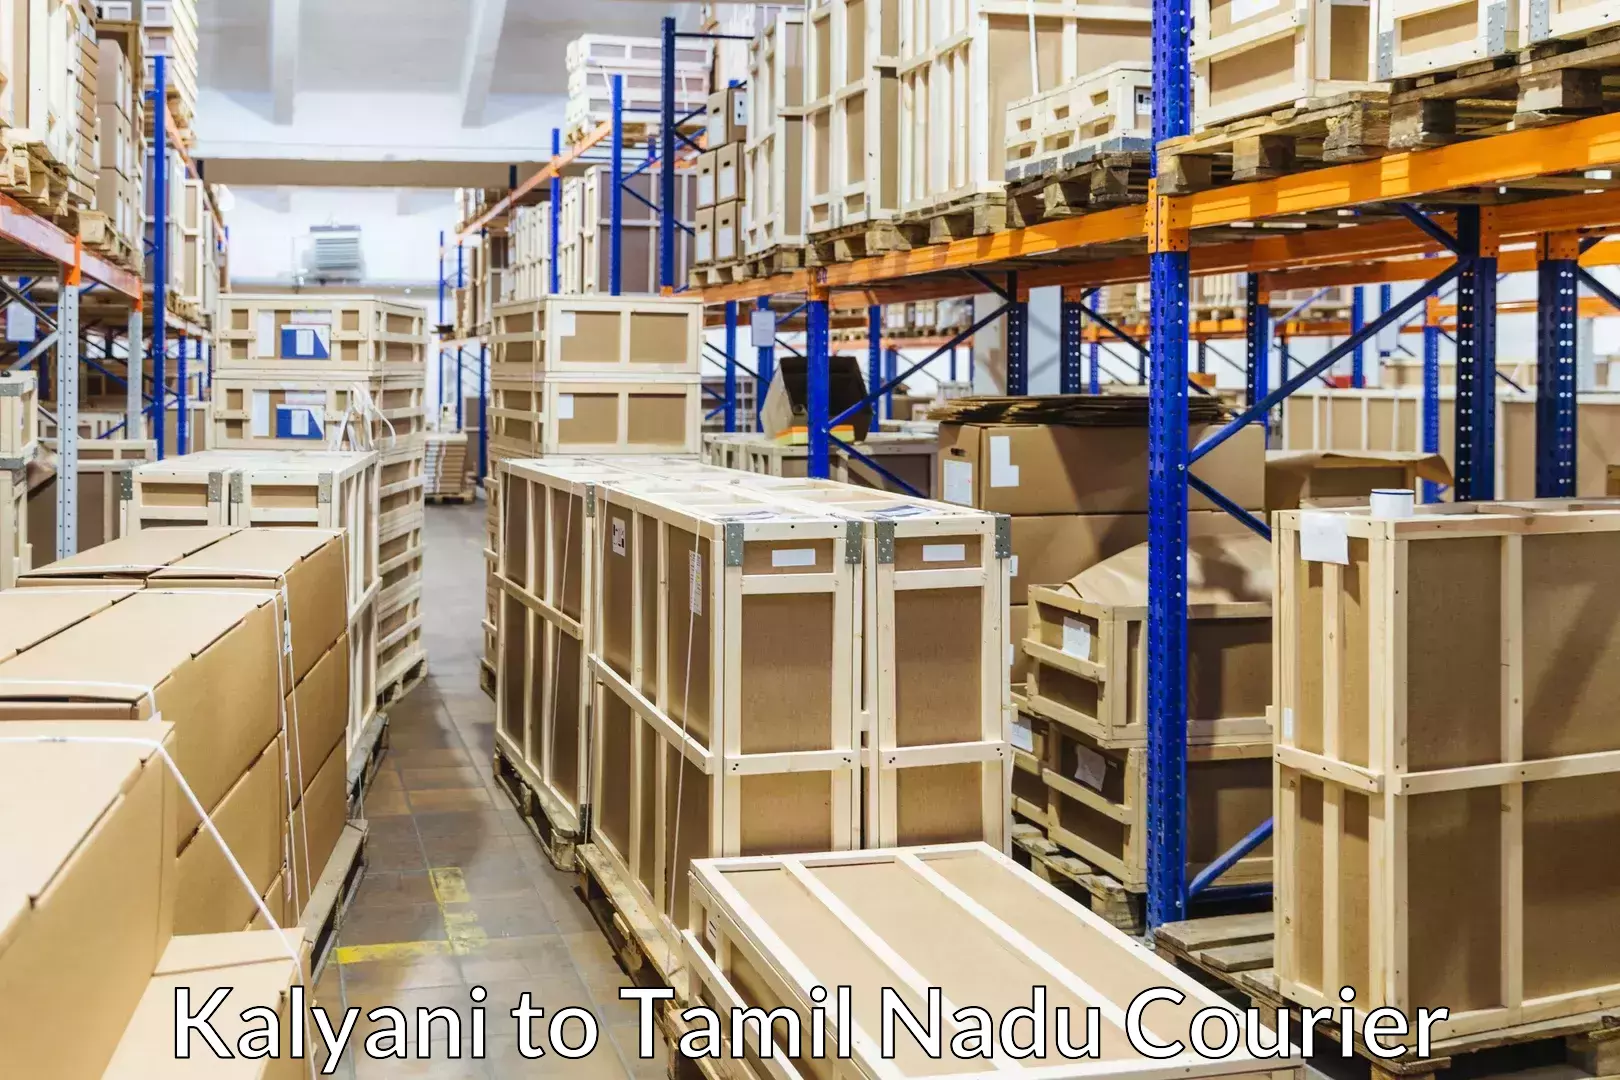 Furniture moving strategies in Kalyani to Tamil Nadu